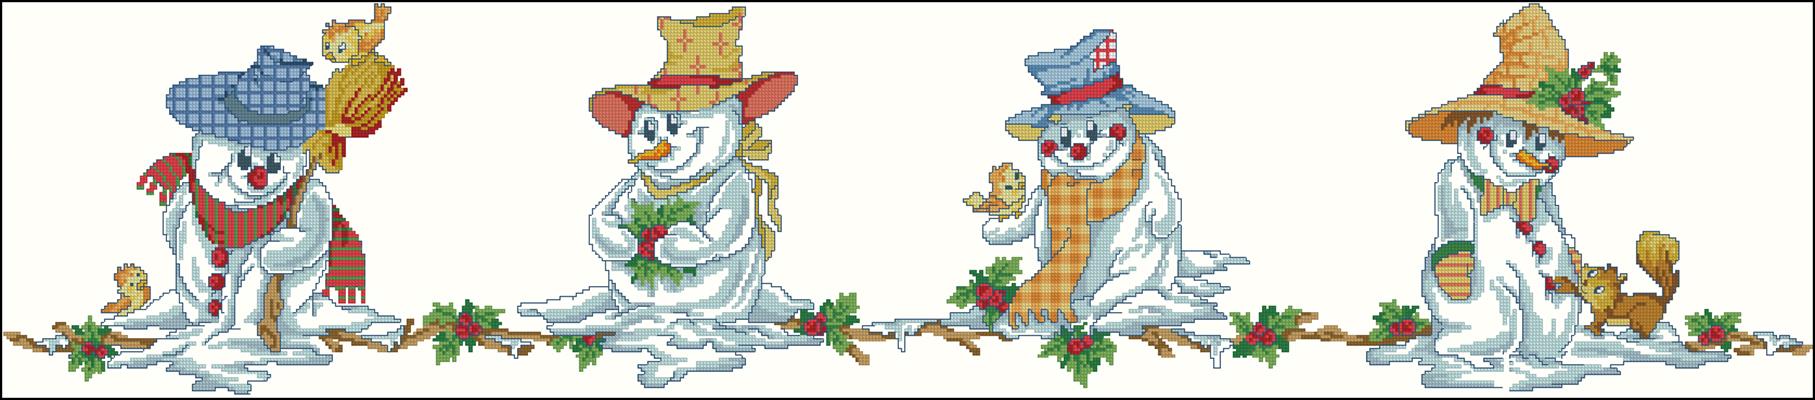 Веселые снеговики схема вышивки крестом